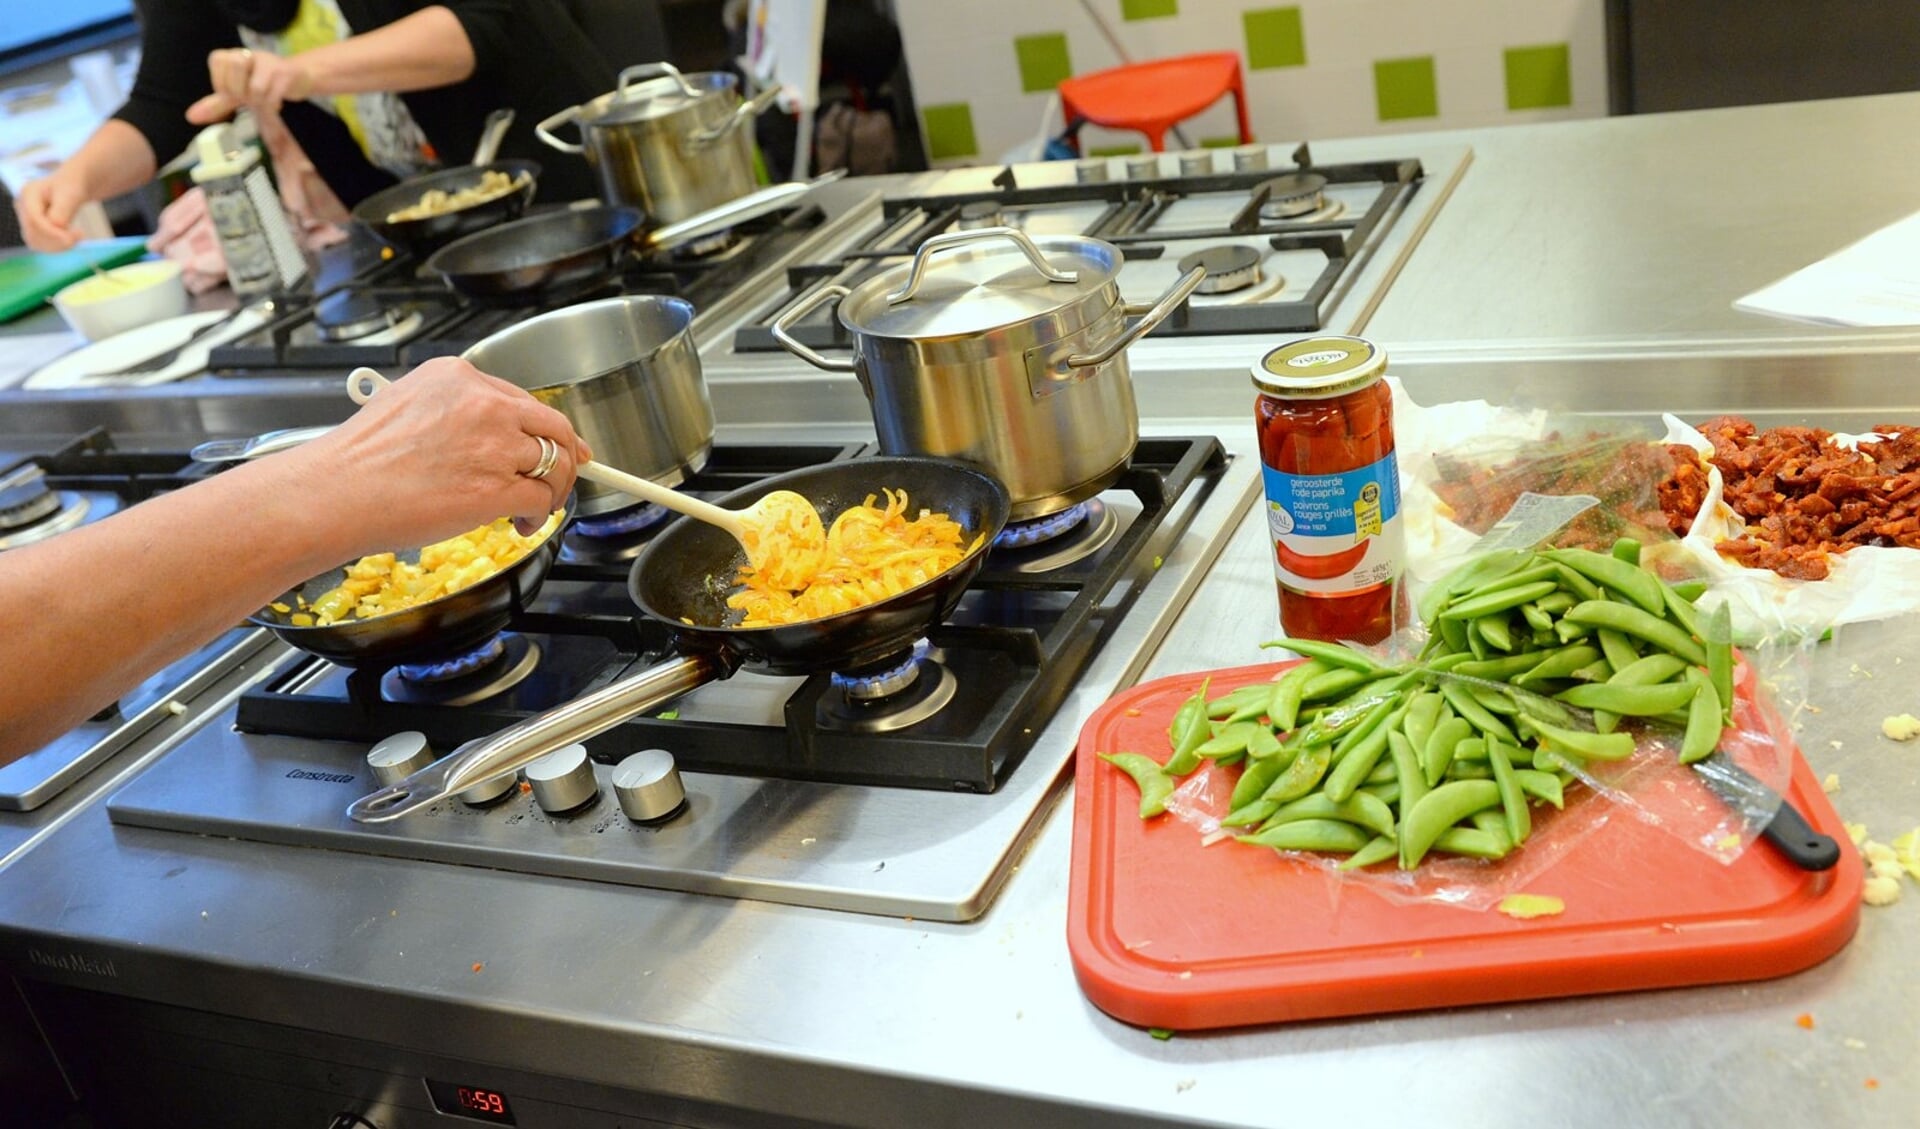 SWO verzorgt een basiscursus koken voor vrouwen